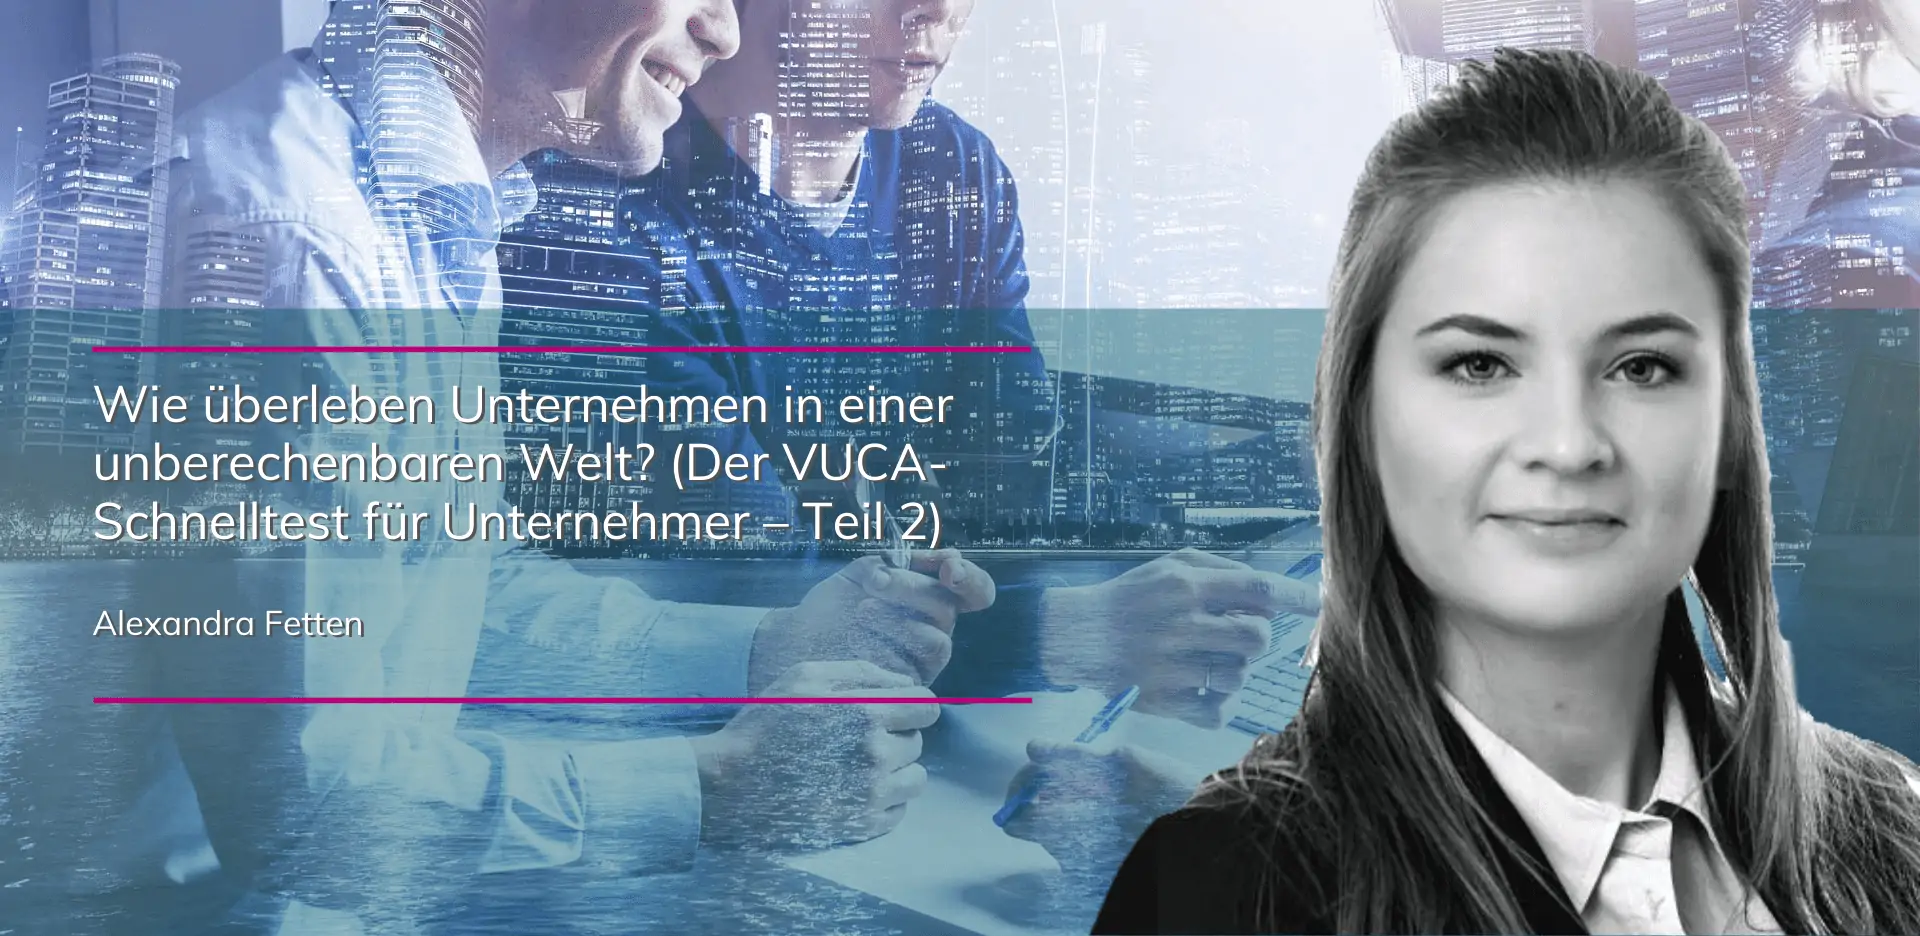 Alexandra Fetten - Der VUCA-Schnelltest für Unternehmer | Teil 2